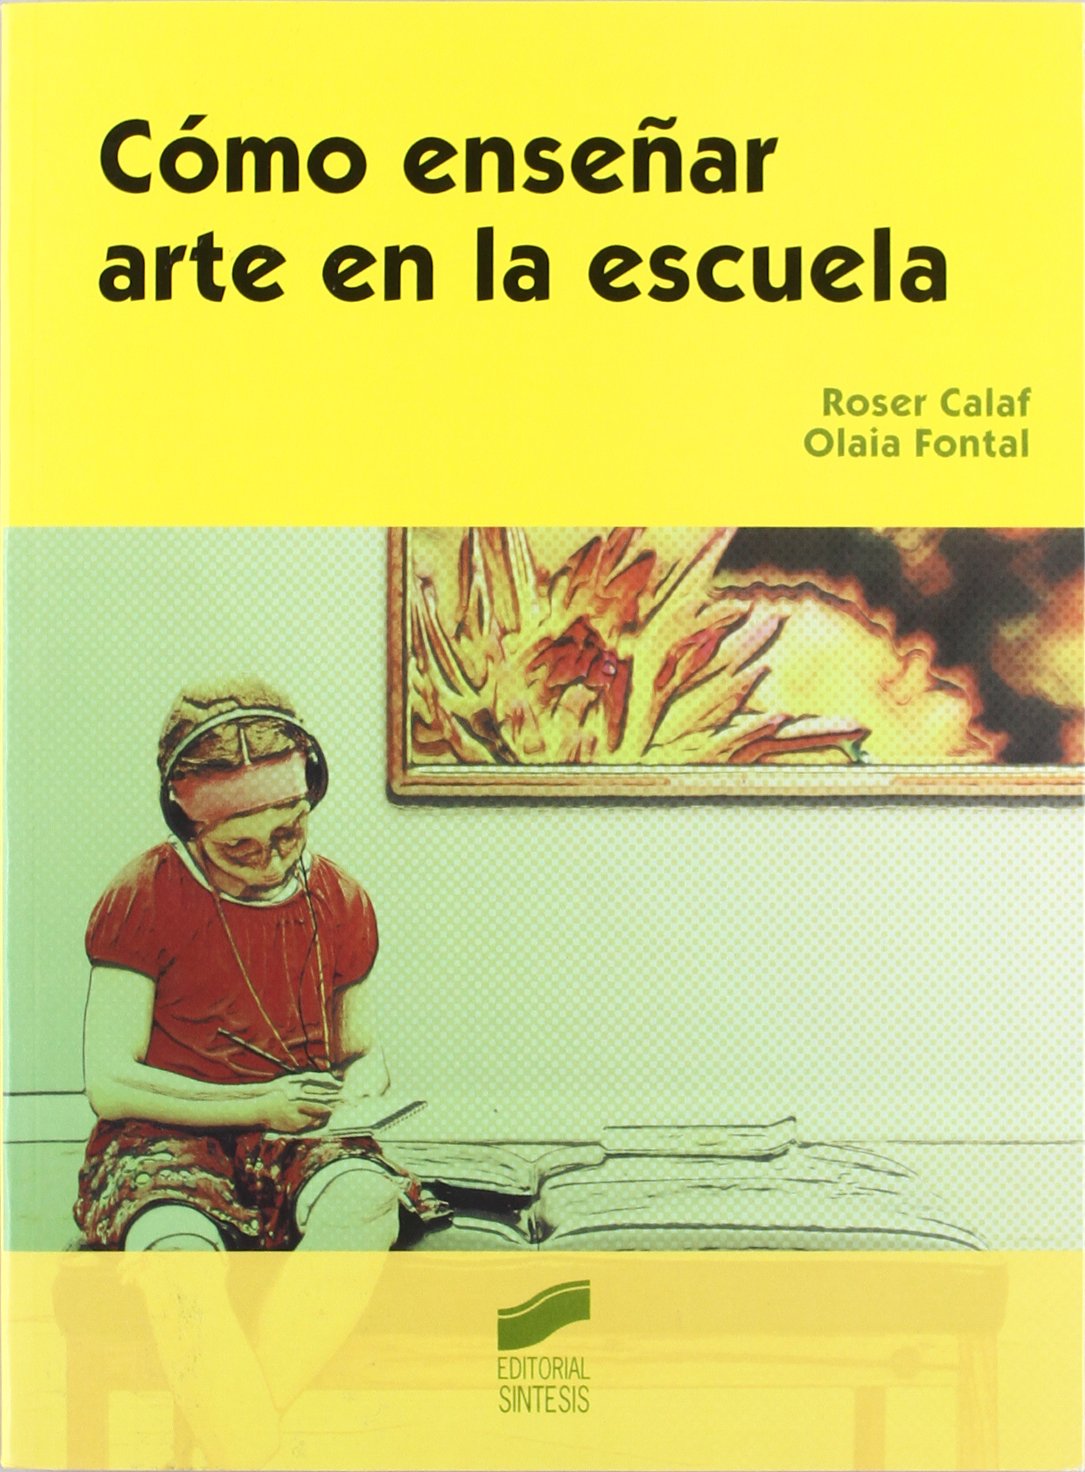 Imagen de portada del libro Cómo enseñar arte en la escuela